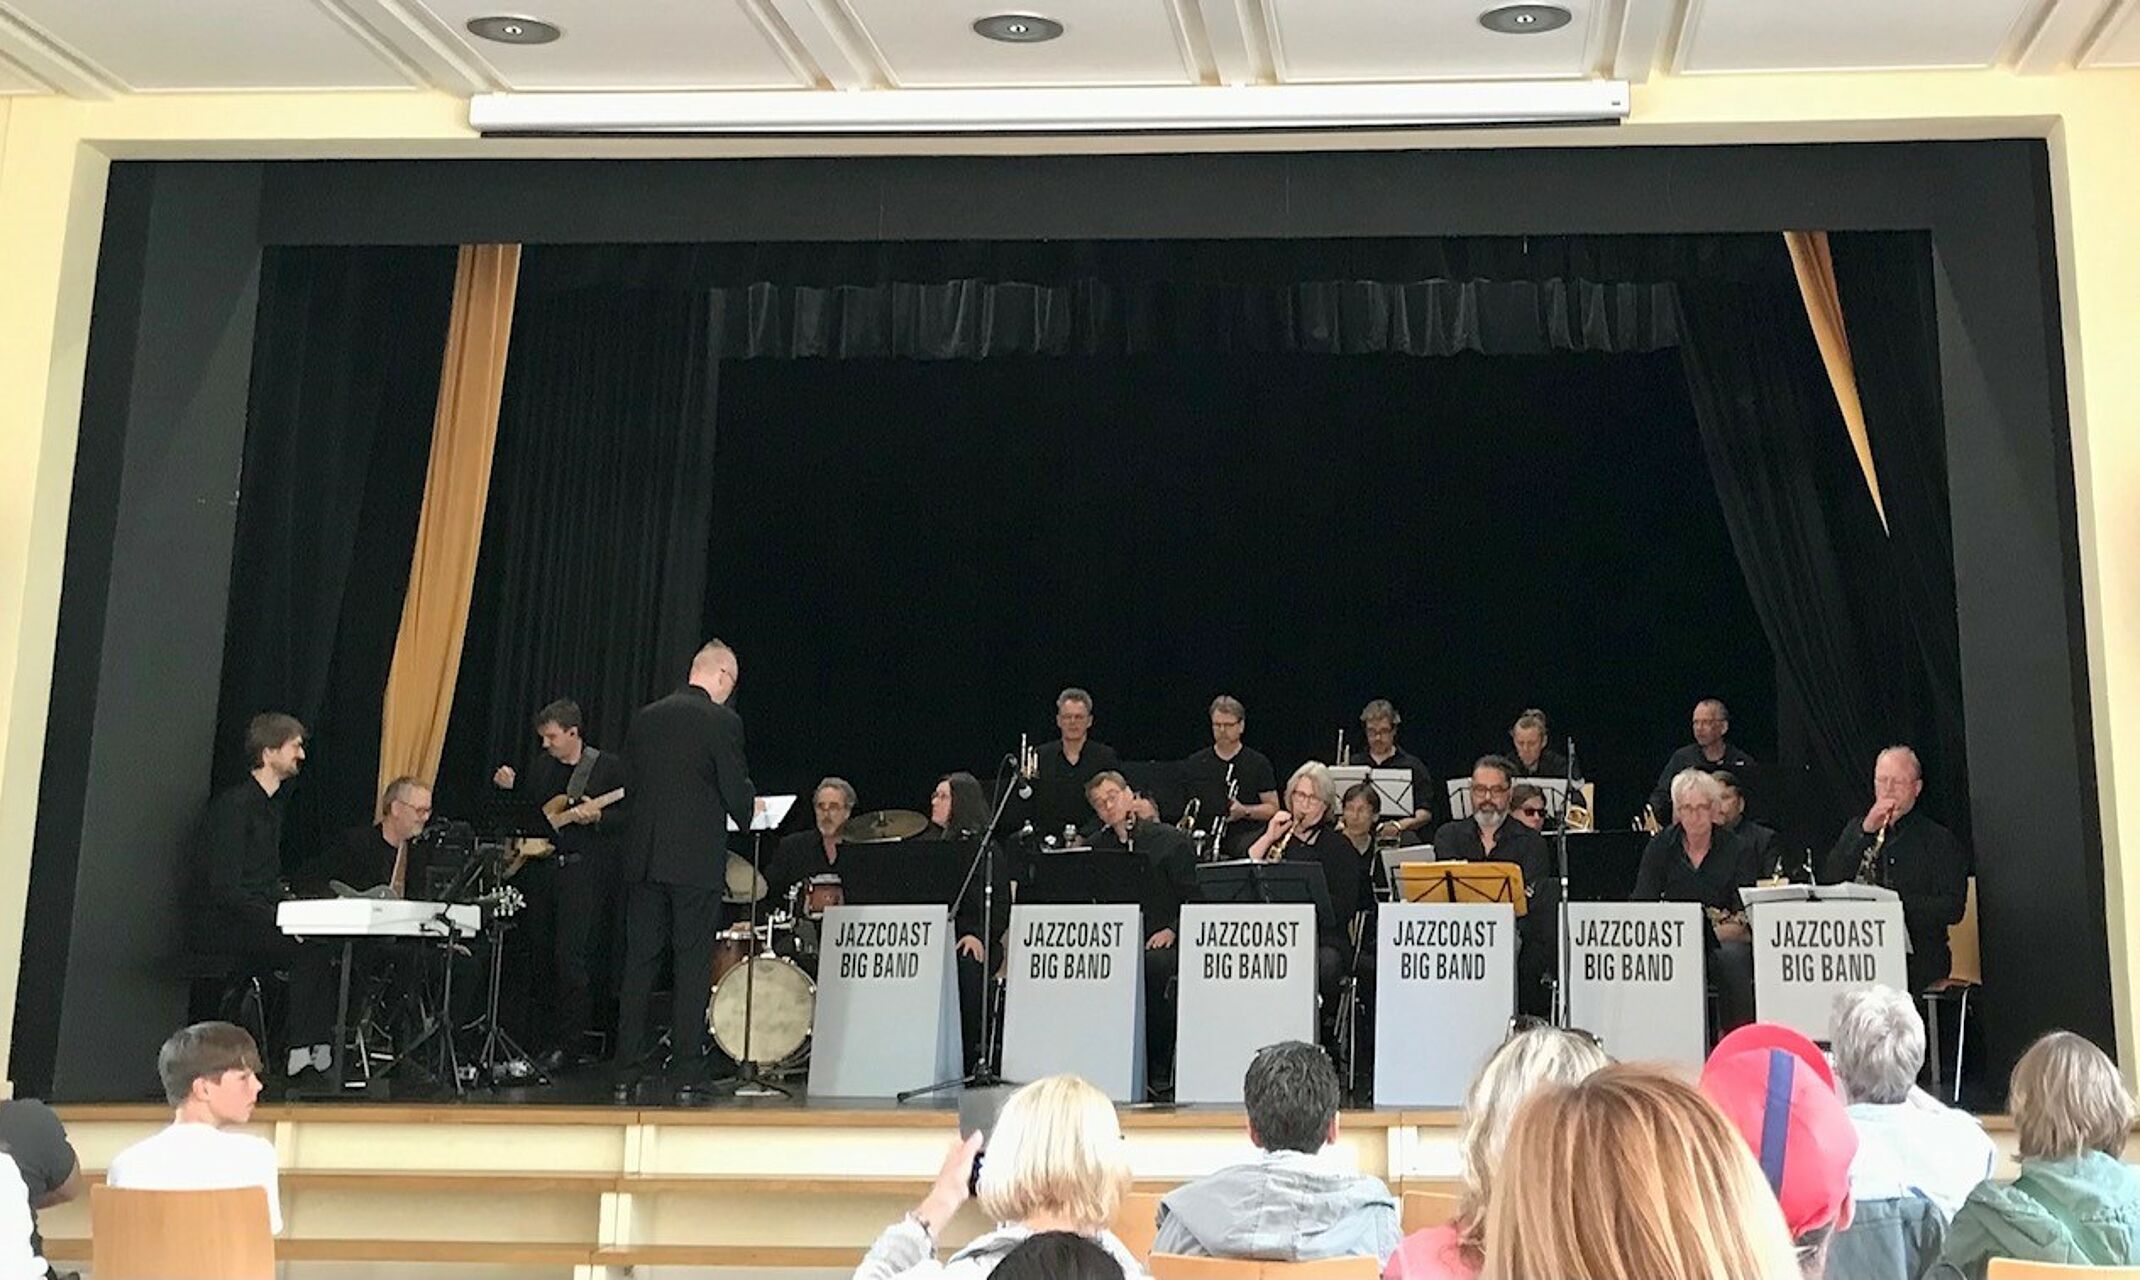 Konzert der Jazzcoast Big Band auf der Bühne im Forum der Nordsee Akademie